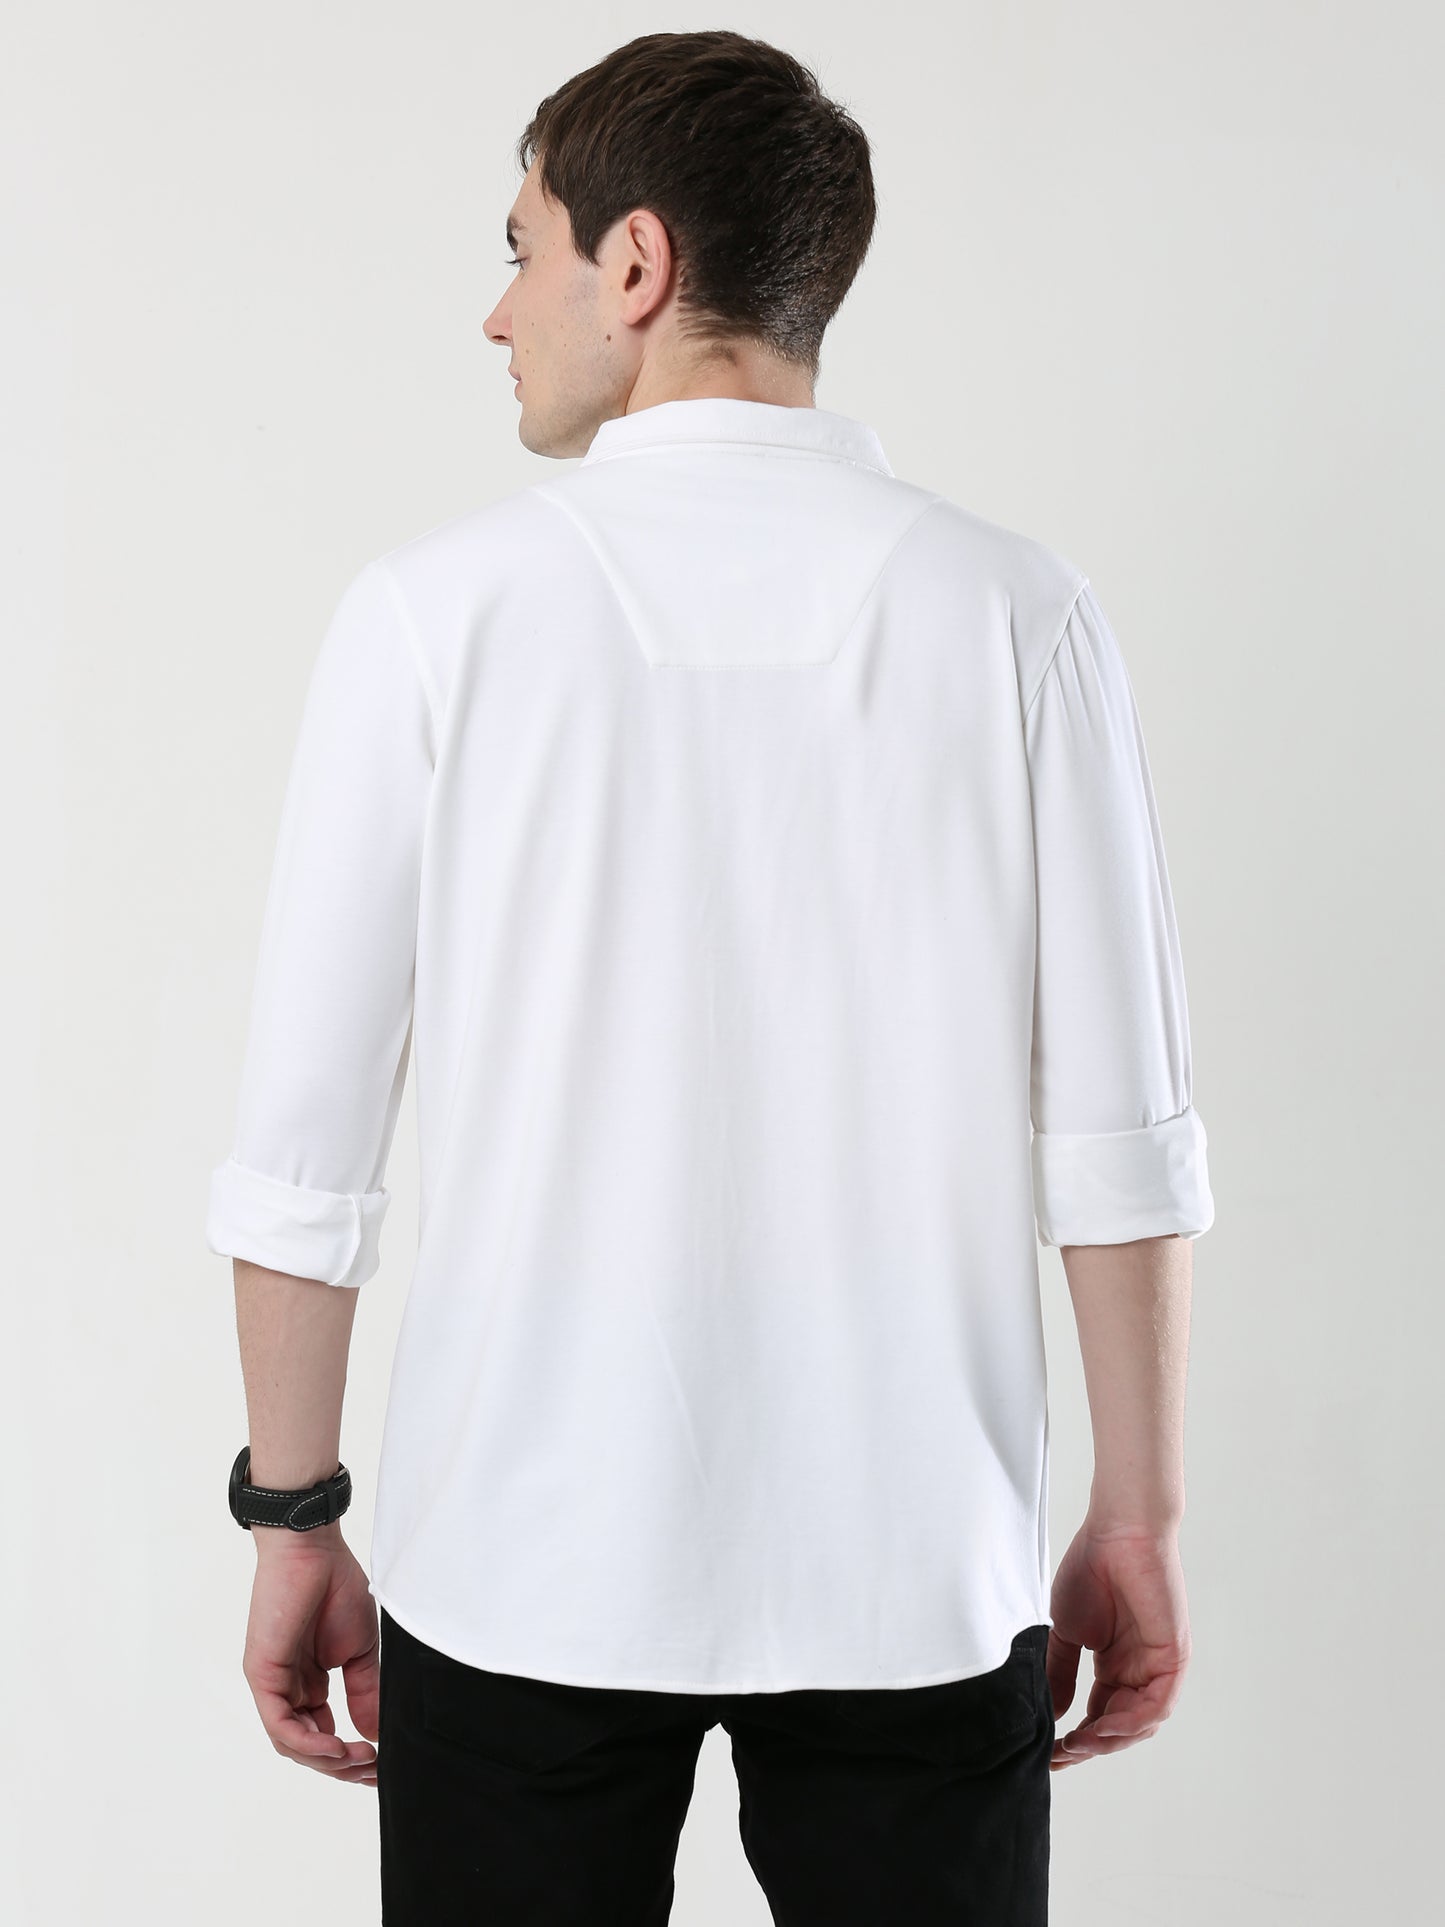 White Double Pocket Royal Knit overshirt - UNISEX